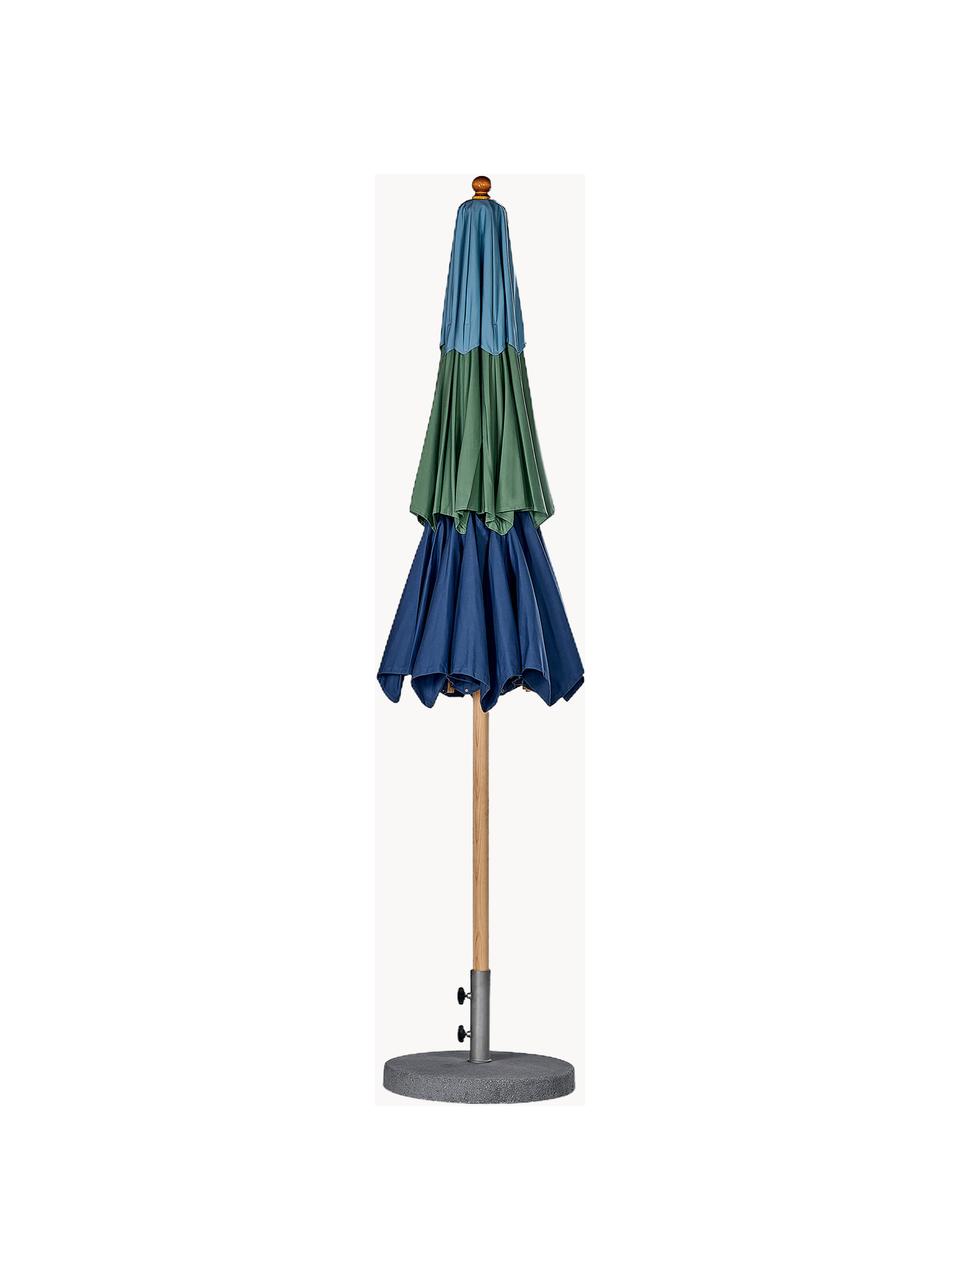 Handgemaakte parasol Klassieker met katrol, diverse maten, Blauwtinten, donkergroen, helder hout, Ø 300 x H 273 cm